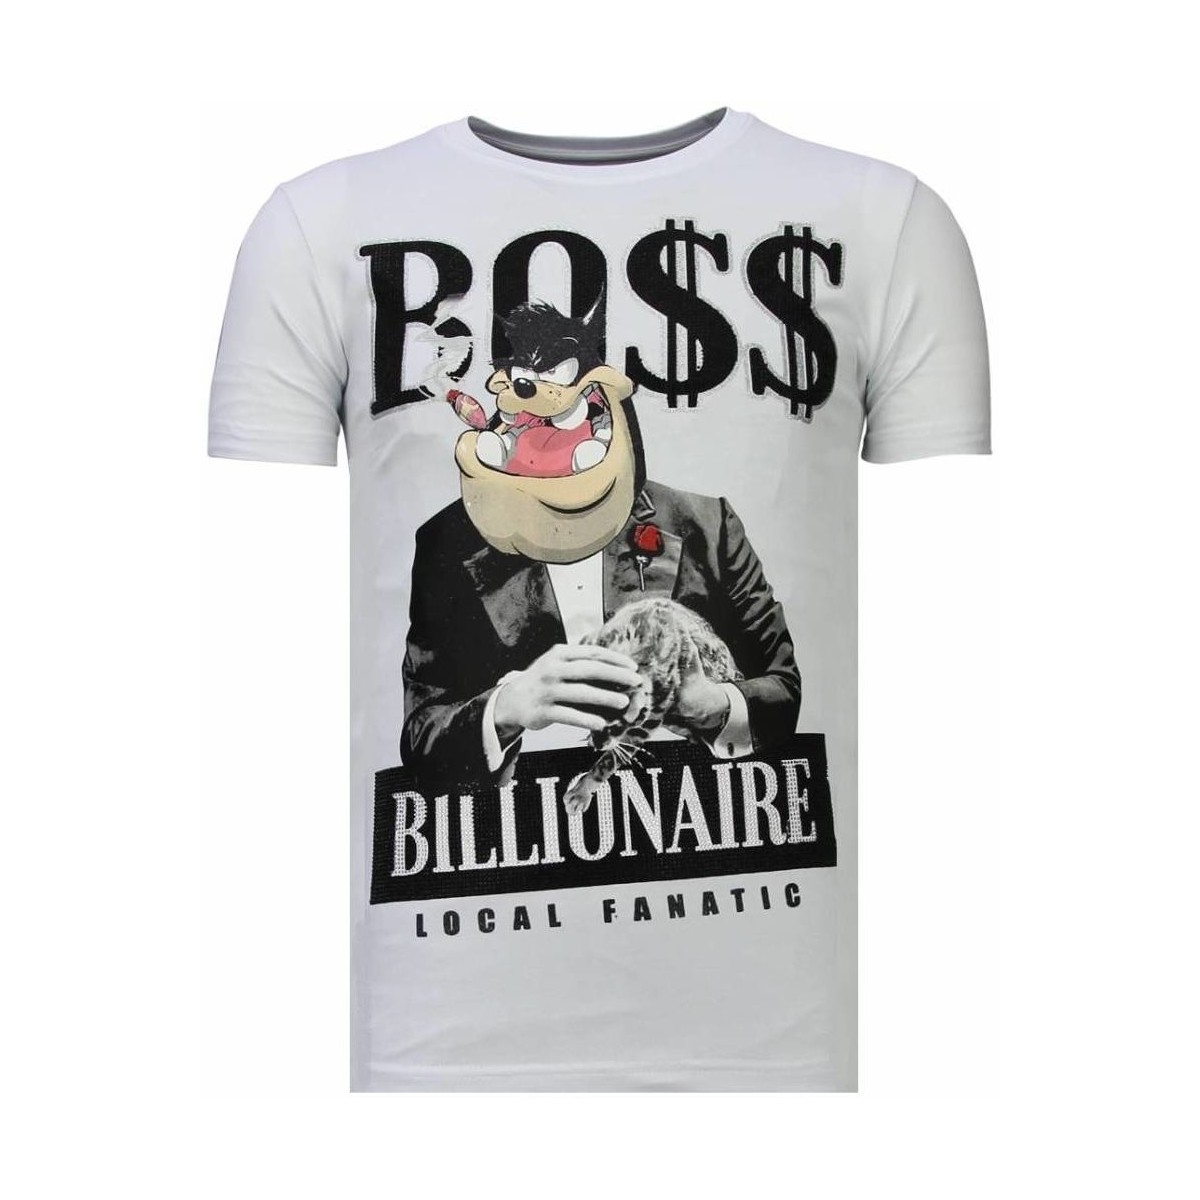 Kleidung Herren T-Shirts Local Fanatic Billionaire Boss Strass Weiss